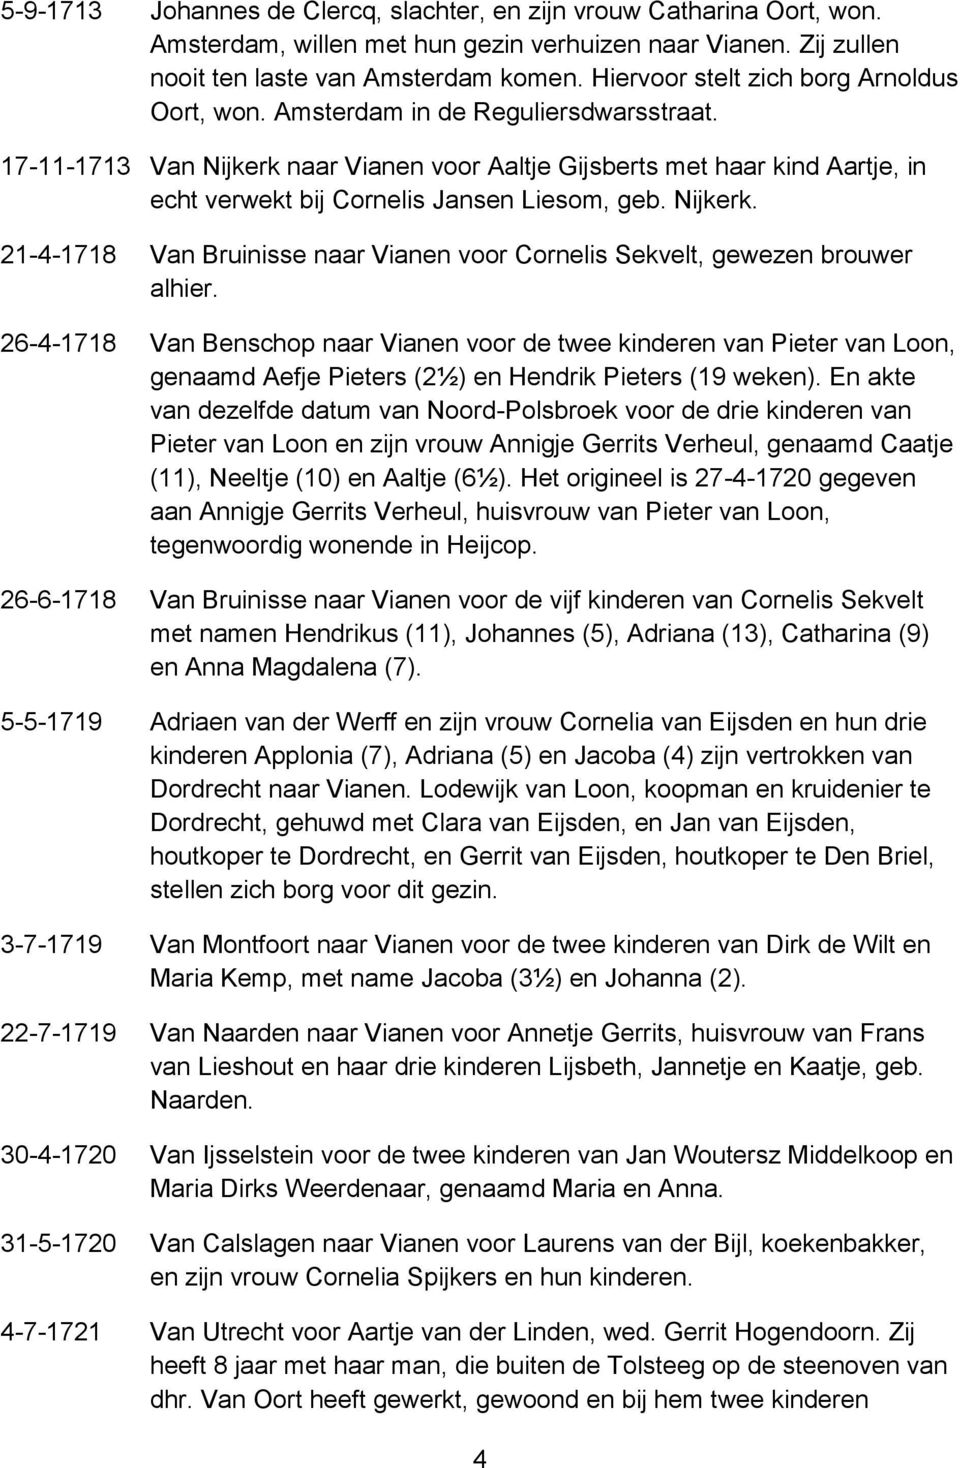 17-11-1713 Van Nijkerk naar Vianen voor Aaltje Gijsberts met haar kind Aartje, in echt verwekt bij Cornelis Jansen Liesom, geb. Nijkerk. 21-4-1718 Van Bruinisse naar Vianen voor Cornelis Sekvelt, gewezen brouwer alhier.